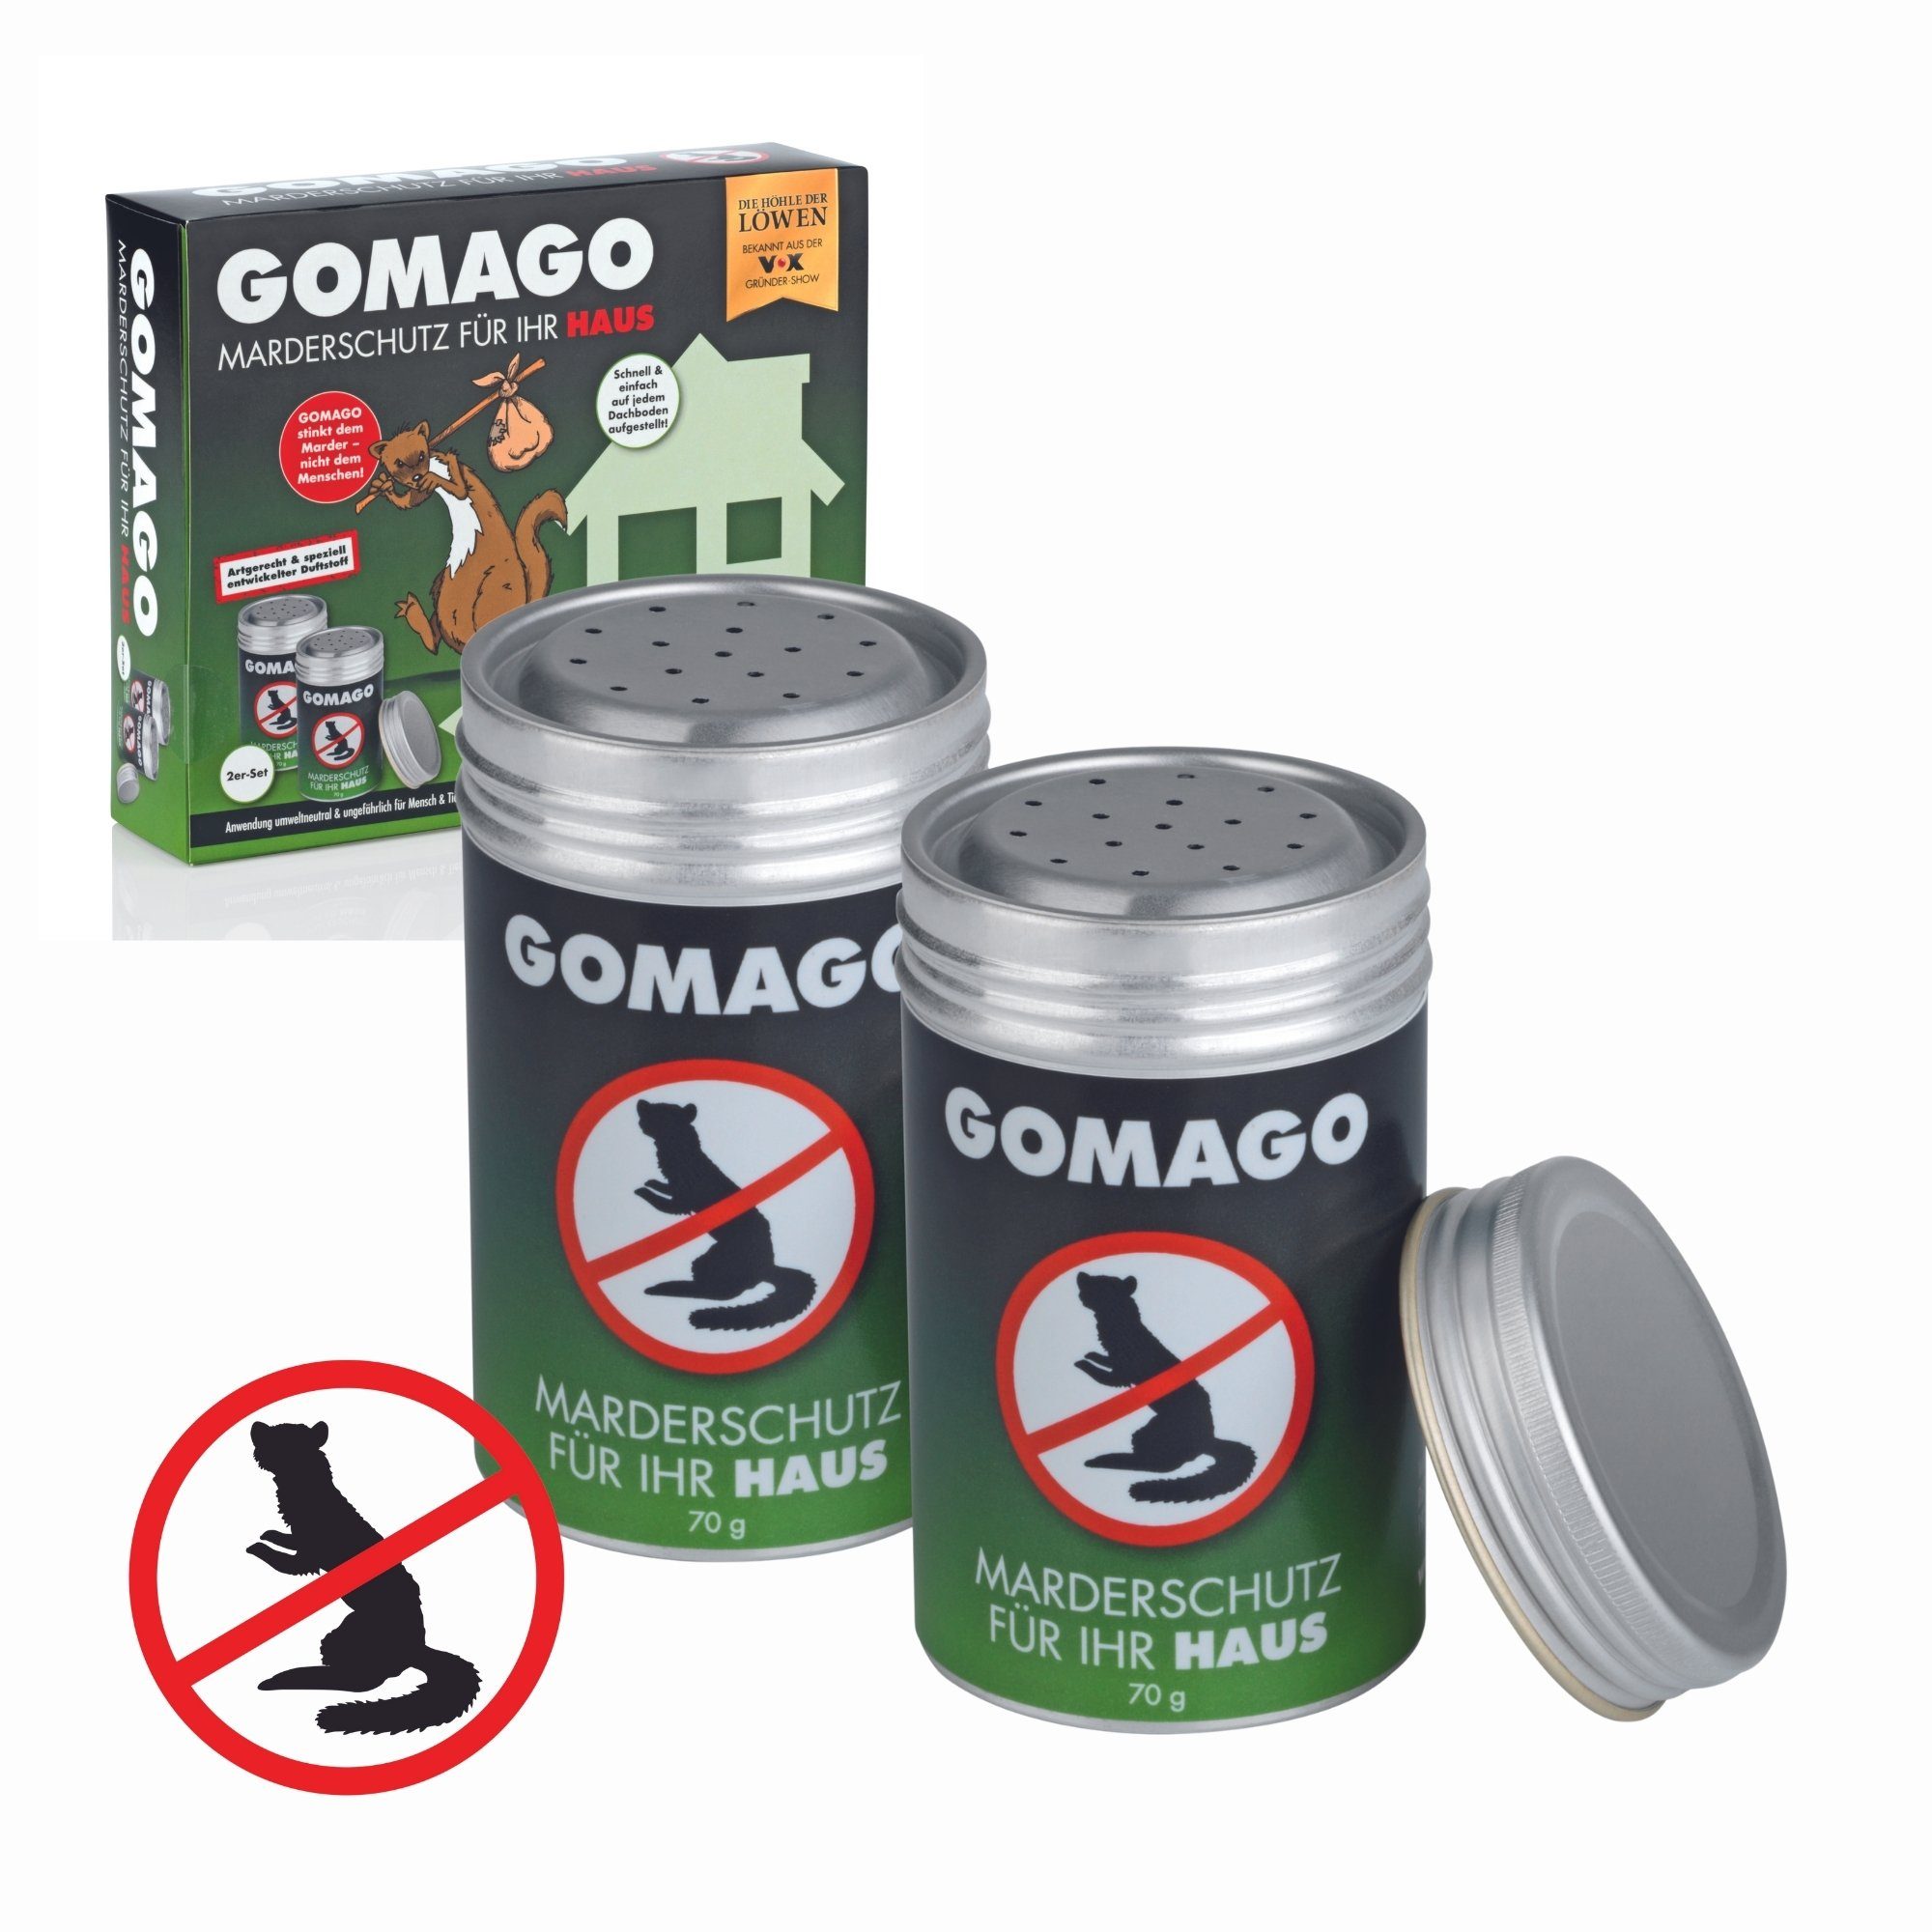 Gomago“ aus DHDL: Marder mit Duftgranulat vertreiben - myHOMEBOOK